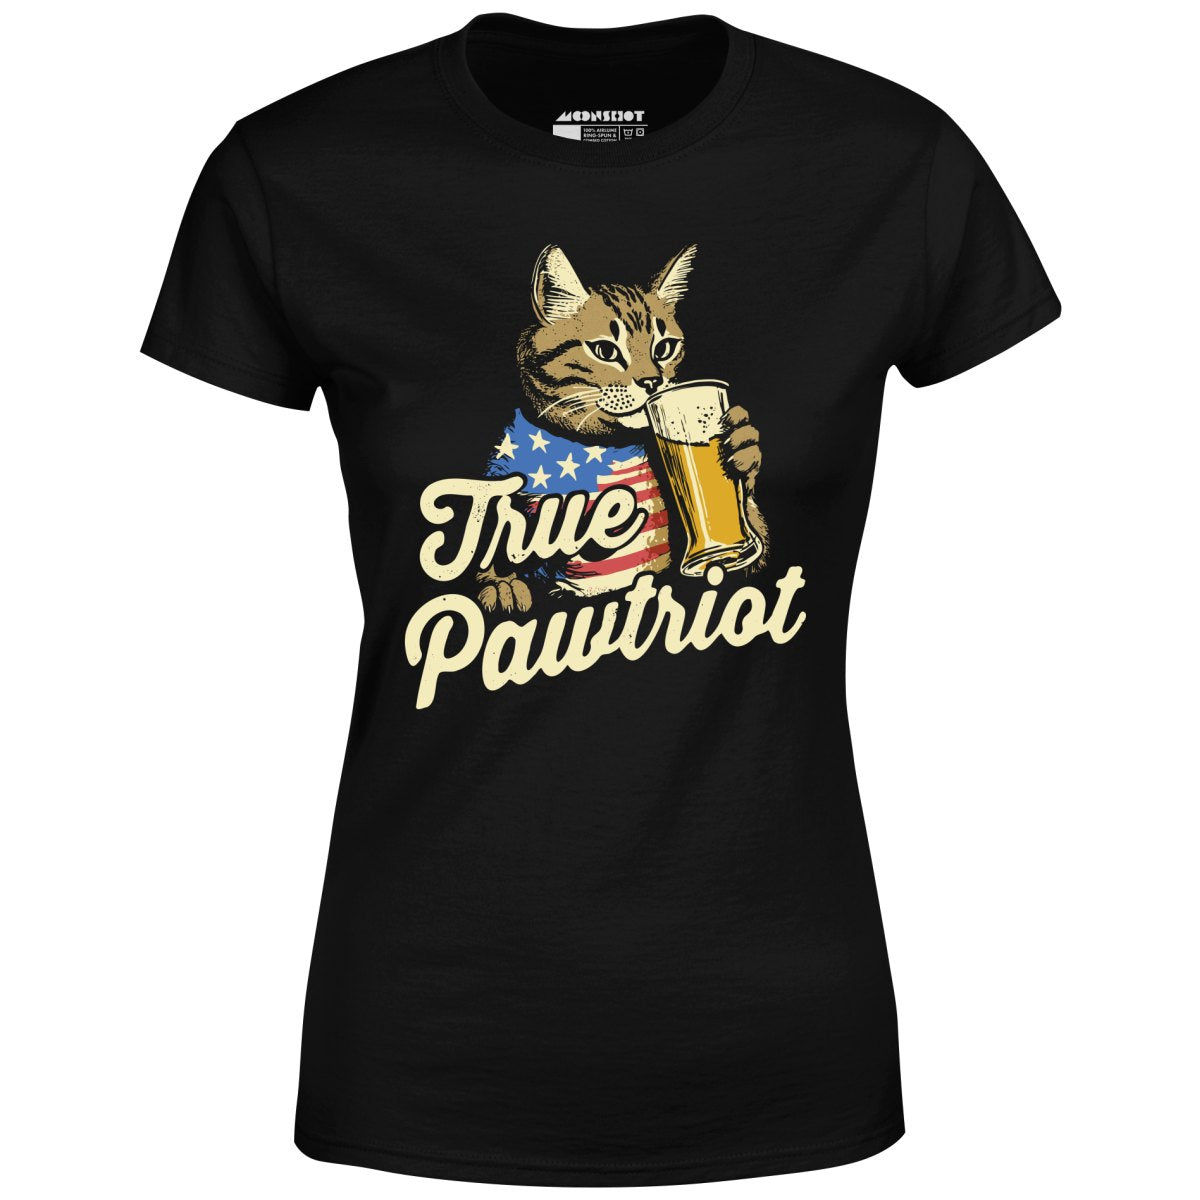 True Pawtriot - Women's T-Shirt